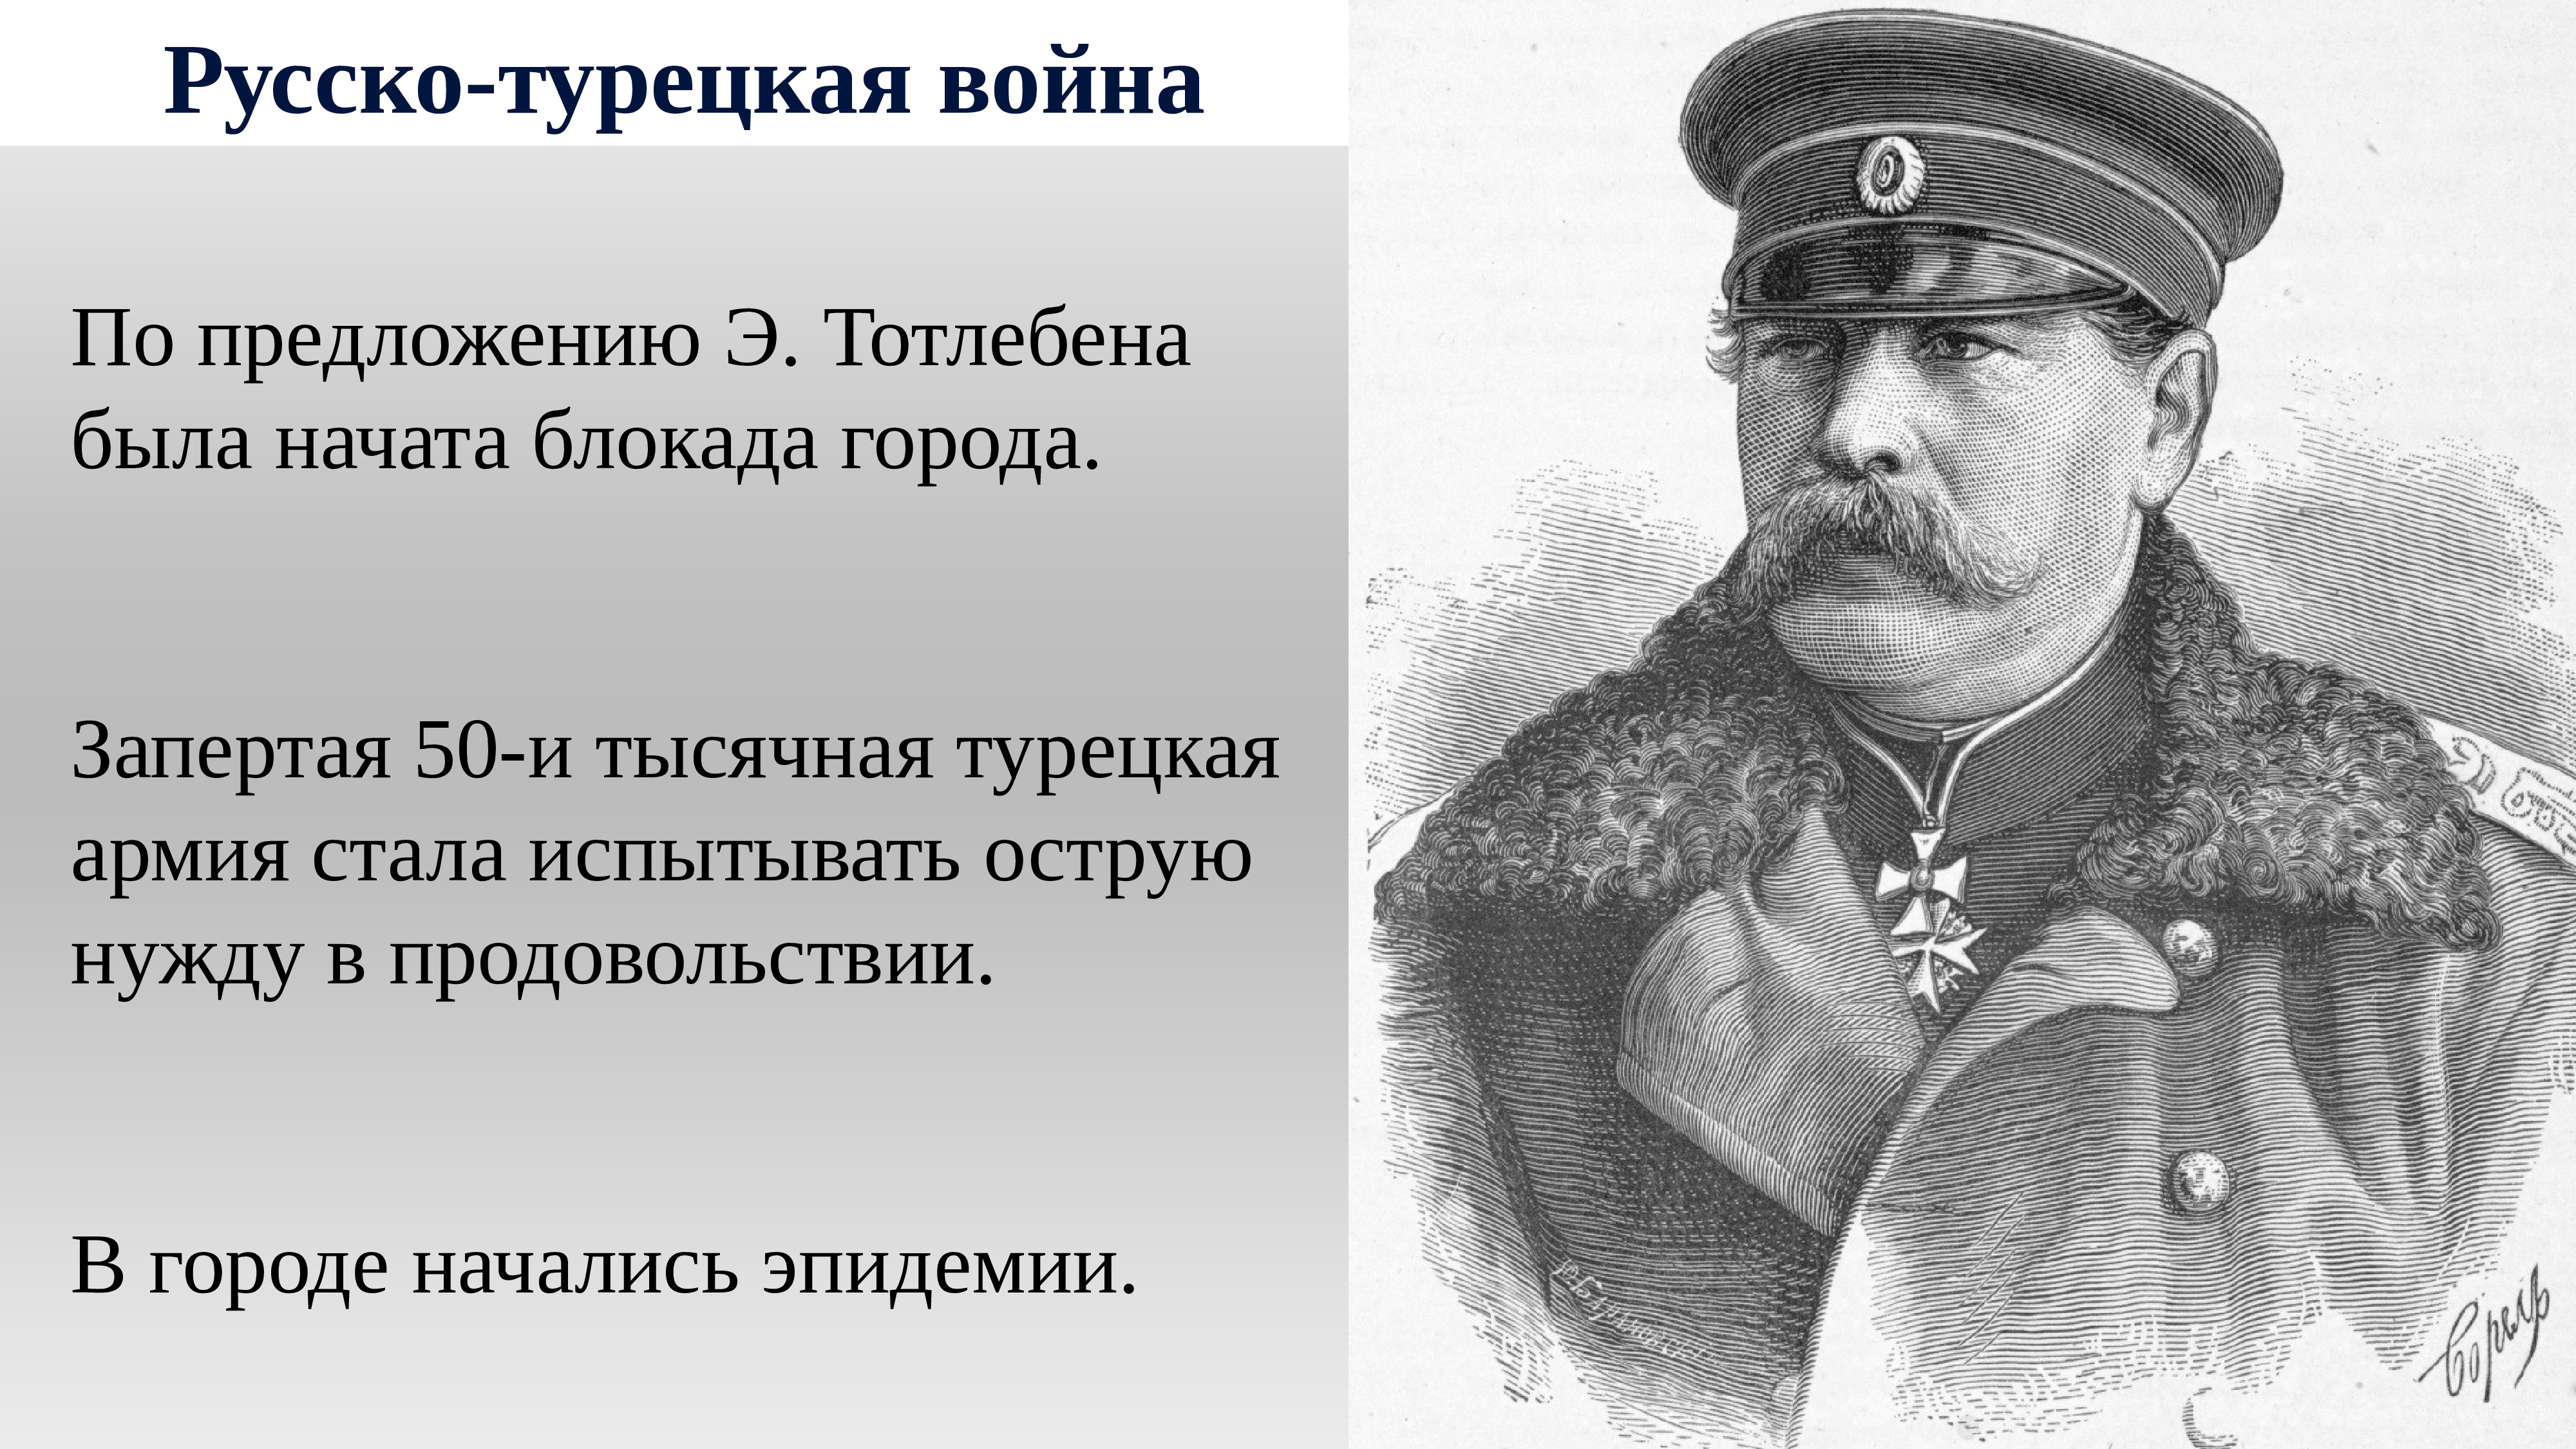 1877 1878 гг военачальник